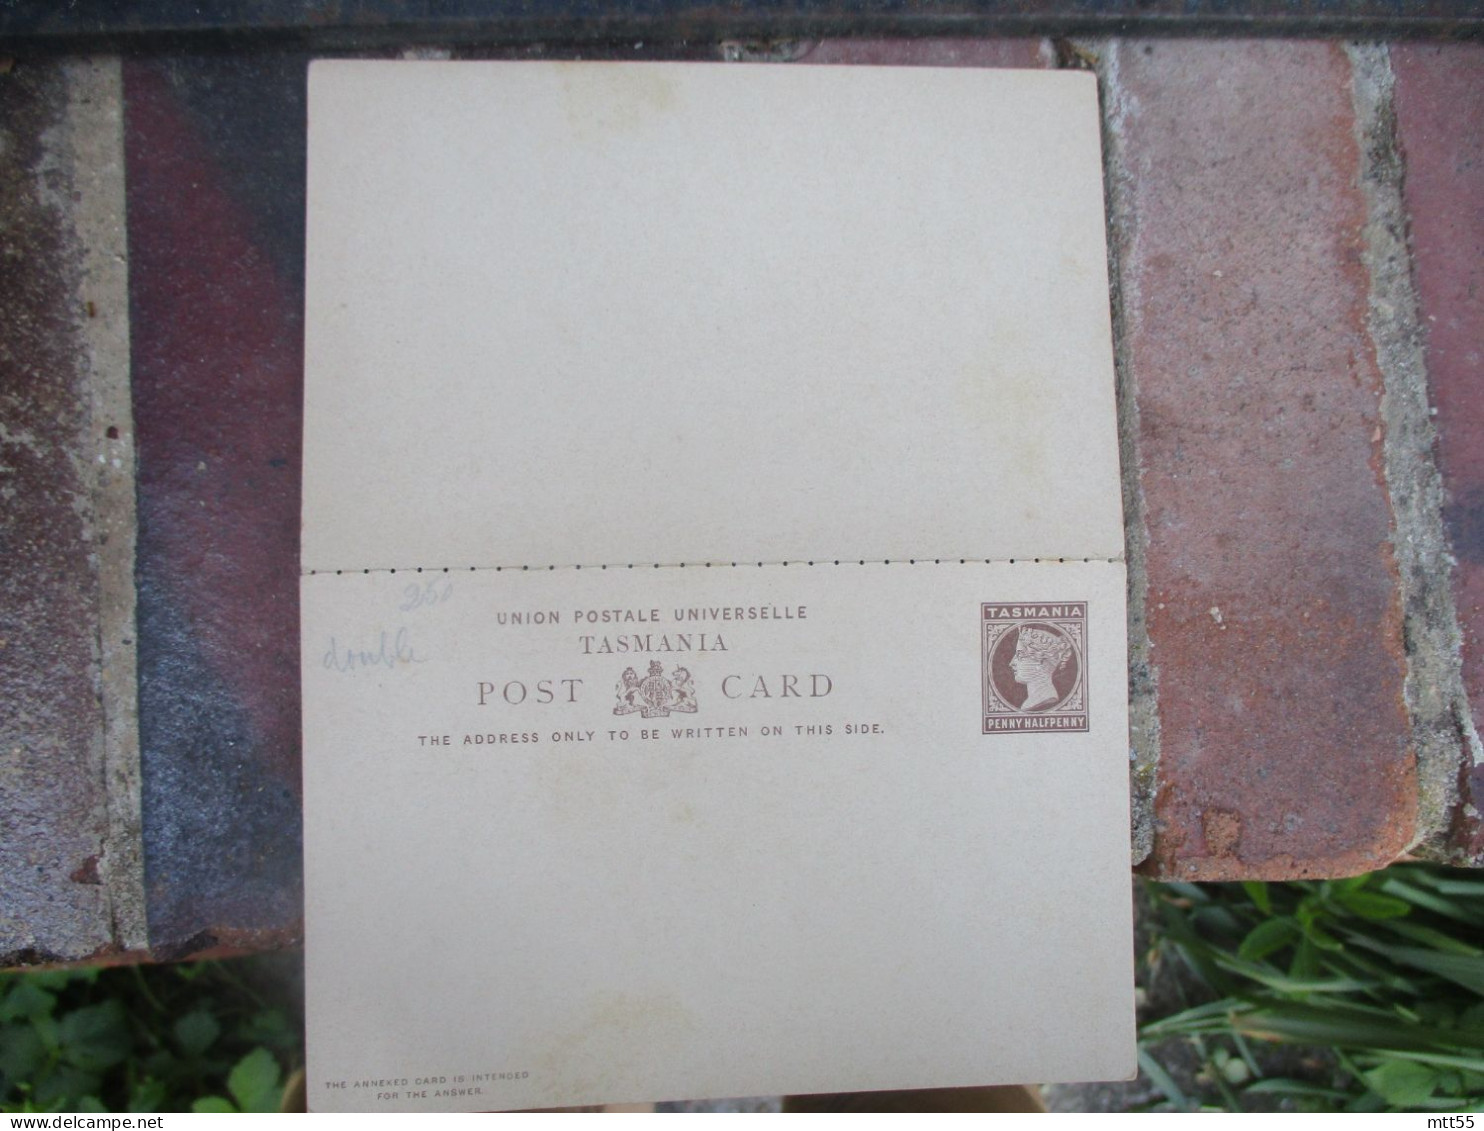 TASMANIA POST CARD DOUBLE CARTE REPONSE ENTIER POSTAL STATIONERY CARD - Otros - Oceanía